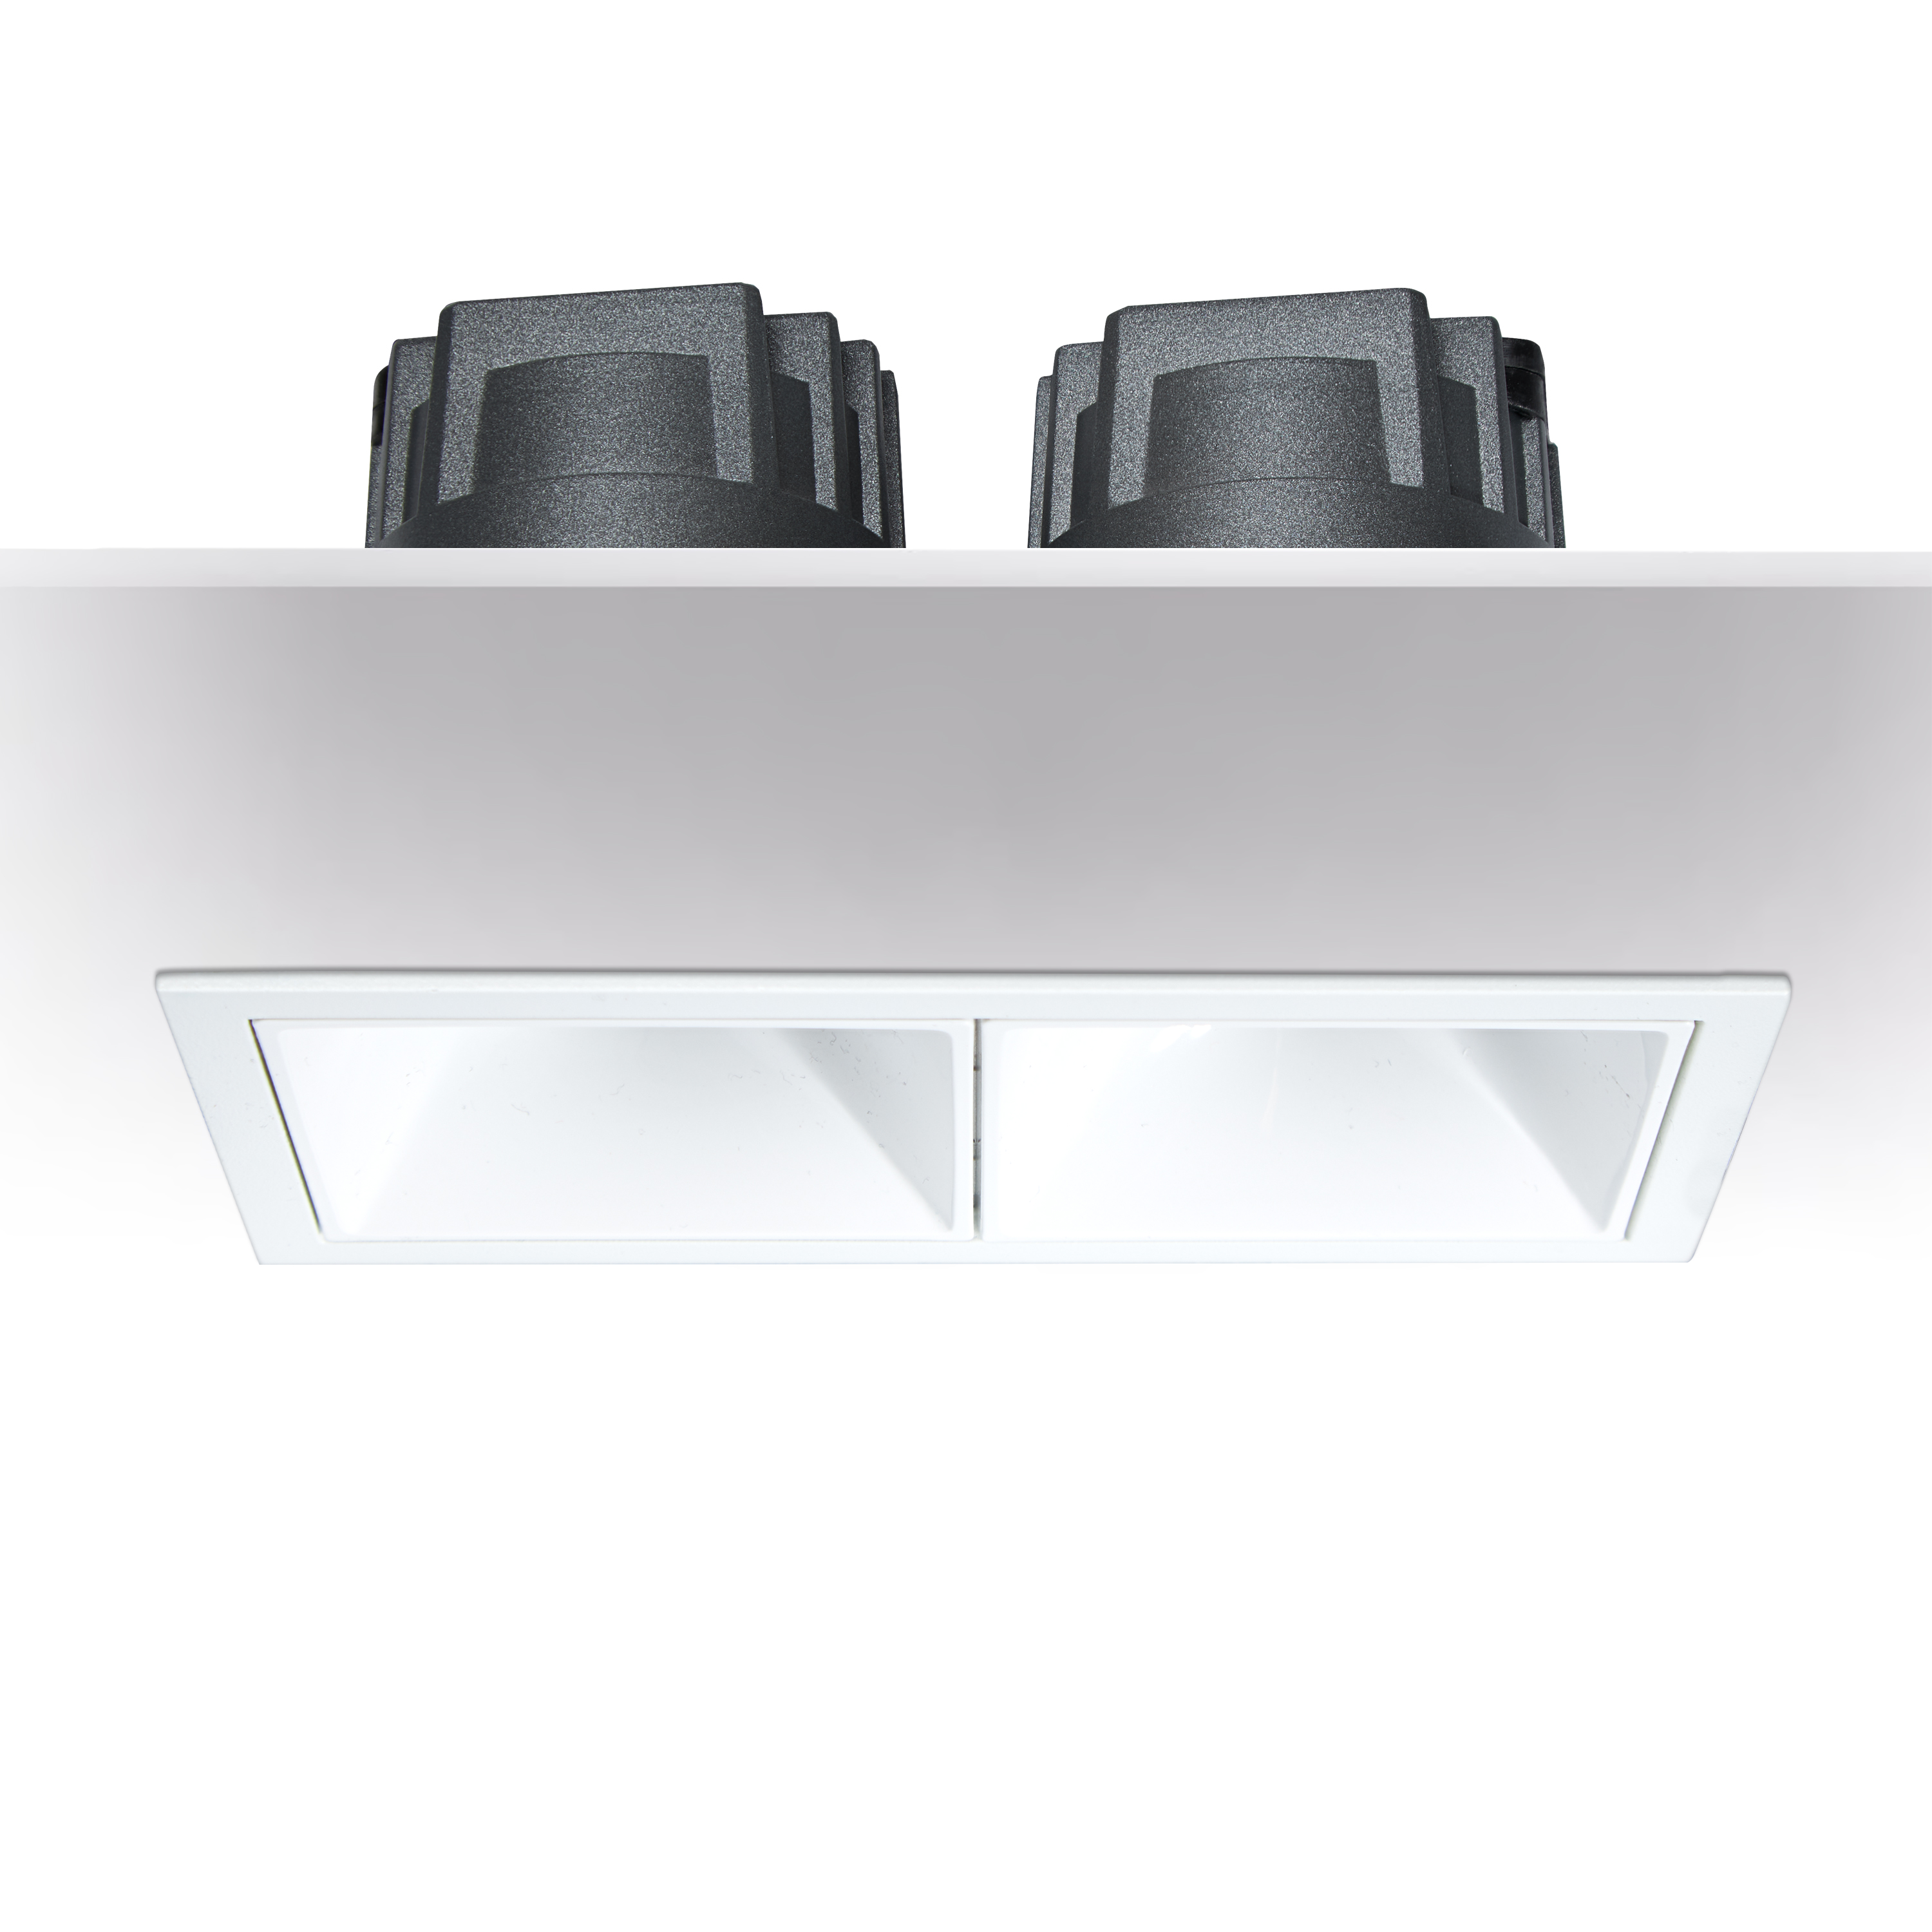 ART-SQ-180x2 LED светильник встраиваемый полуповоротный Downlight   -  Встраиваемые светильники 